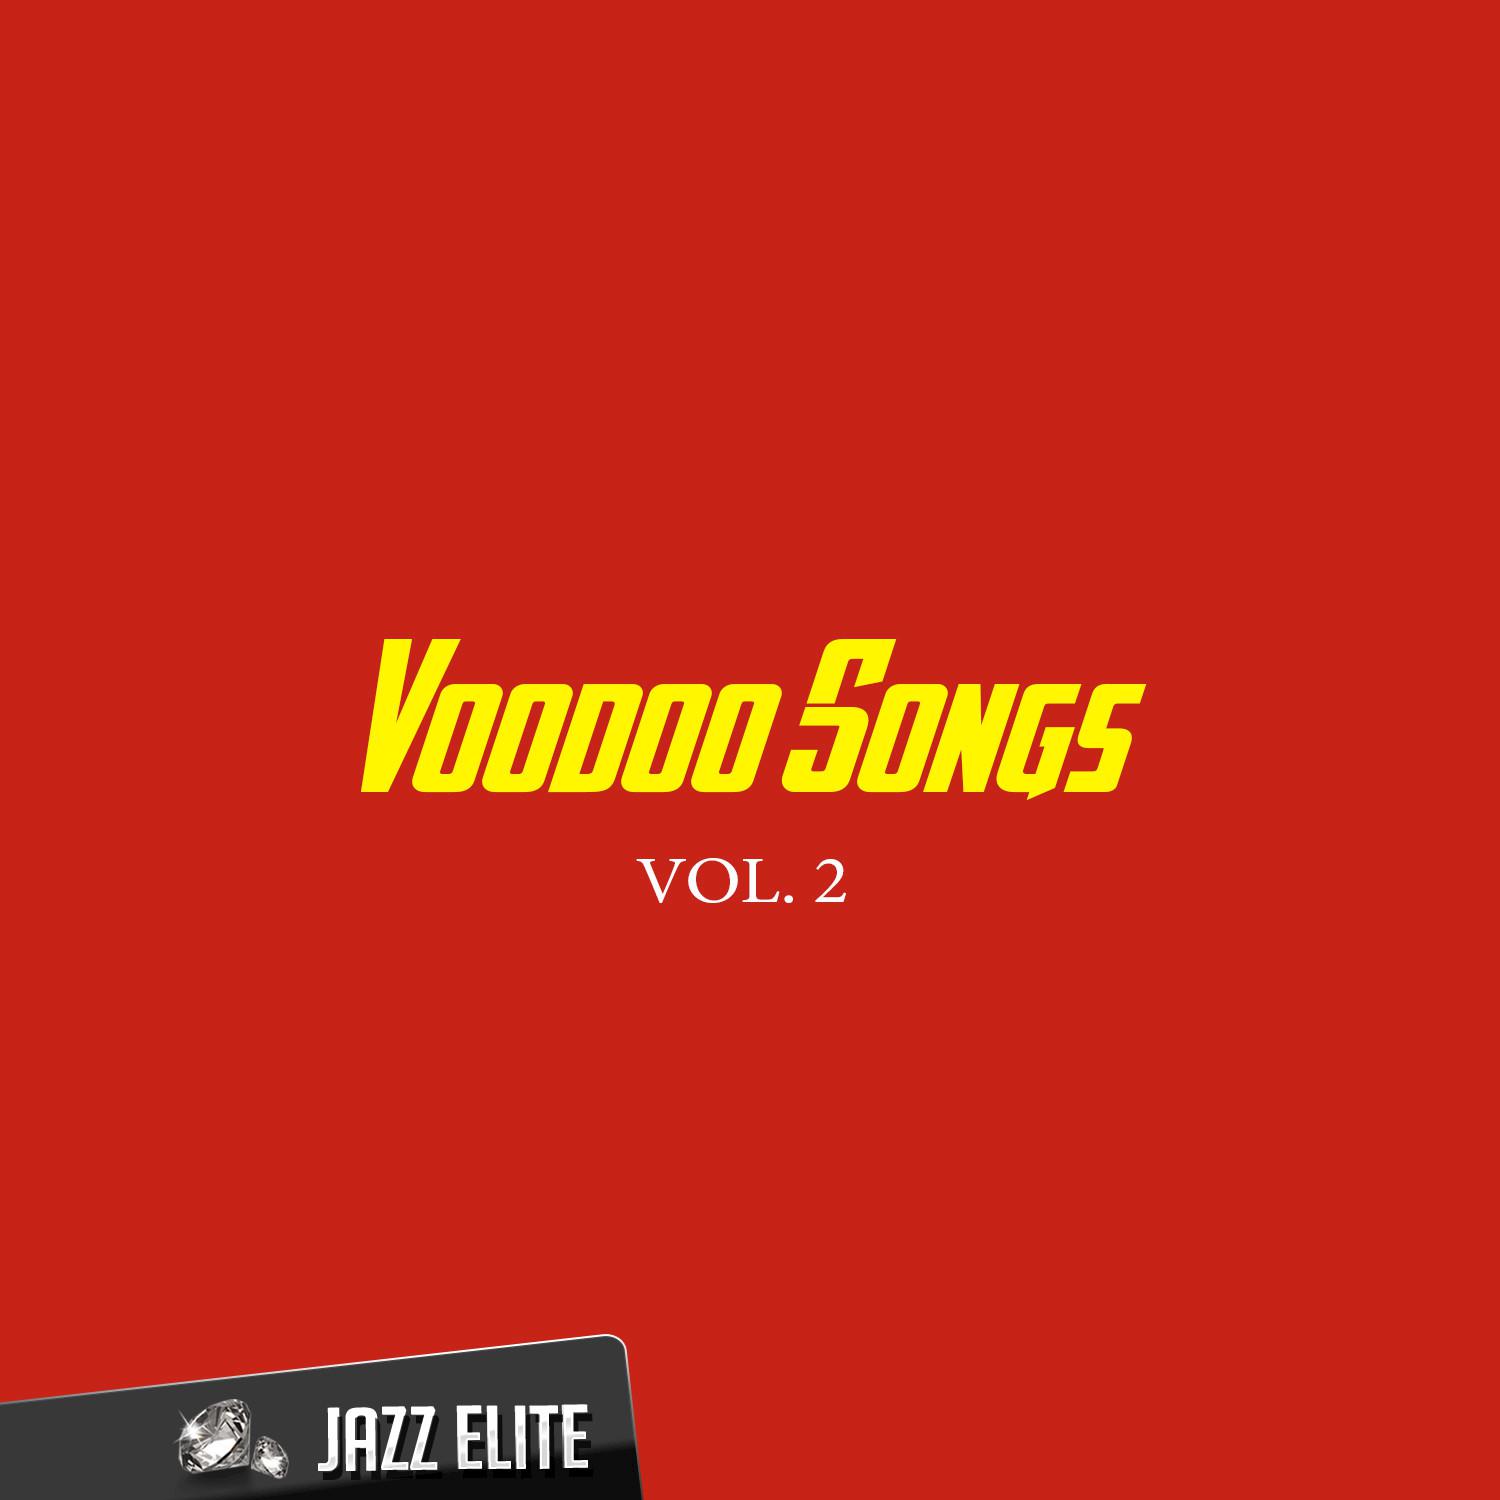 Voodoo Songs, Vol. 2